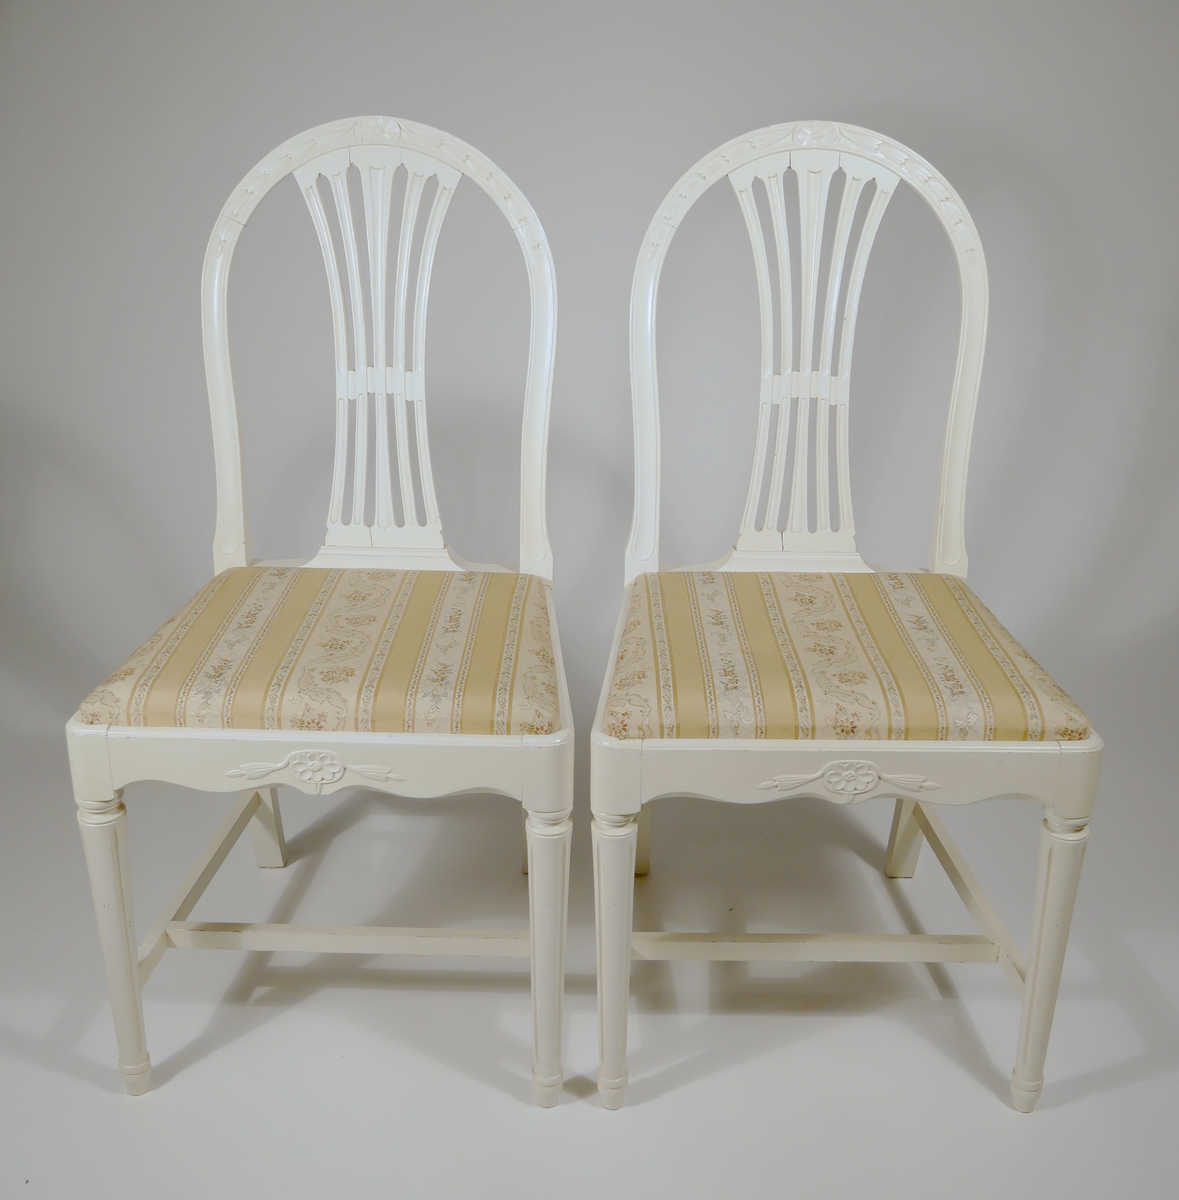 Två vitmålade stolar med löstagbar klädd sits. Märkta J.G.A. = J.G. Axelssons snickeriverkstad. Verkstaden tillverkade möbler på beställning och efter kundens önskemål.